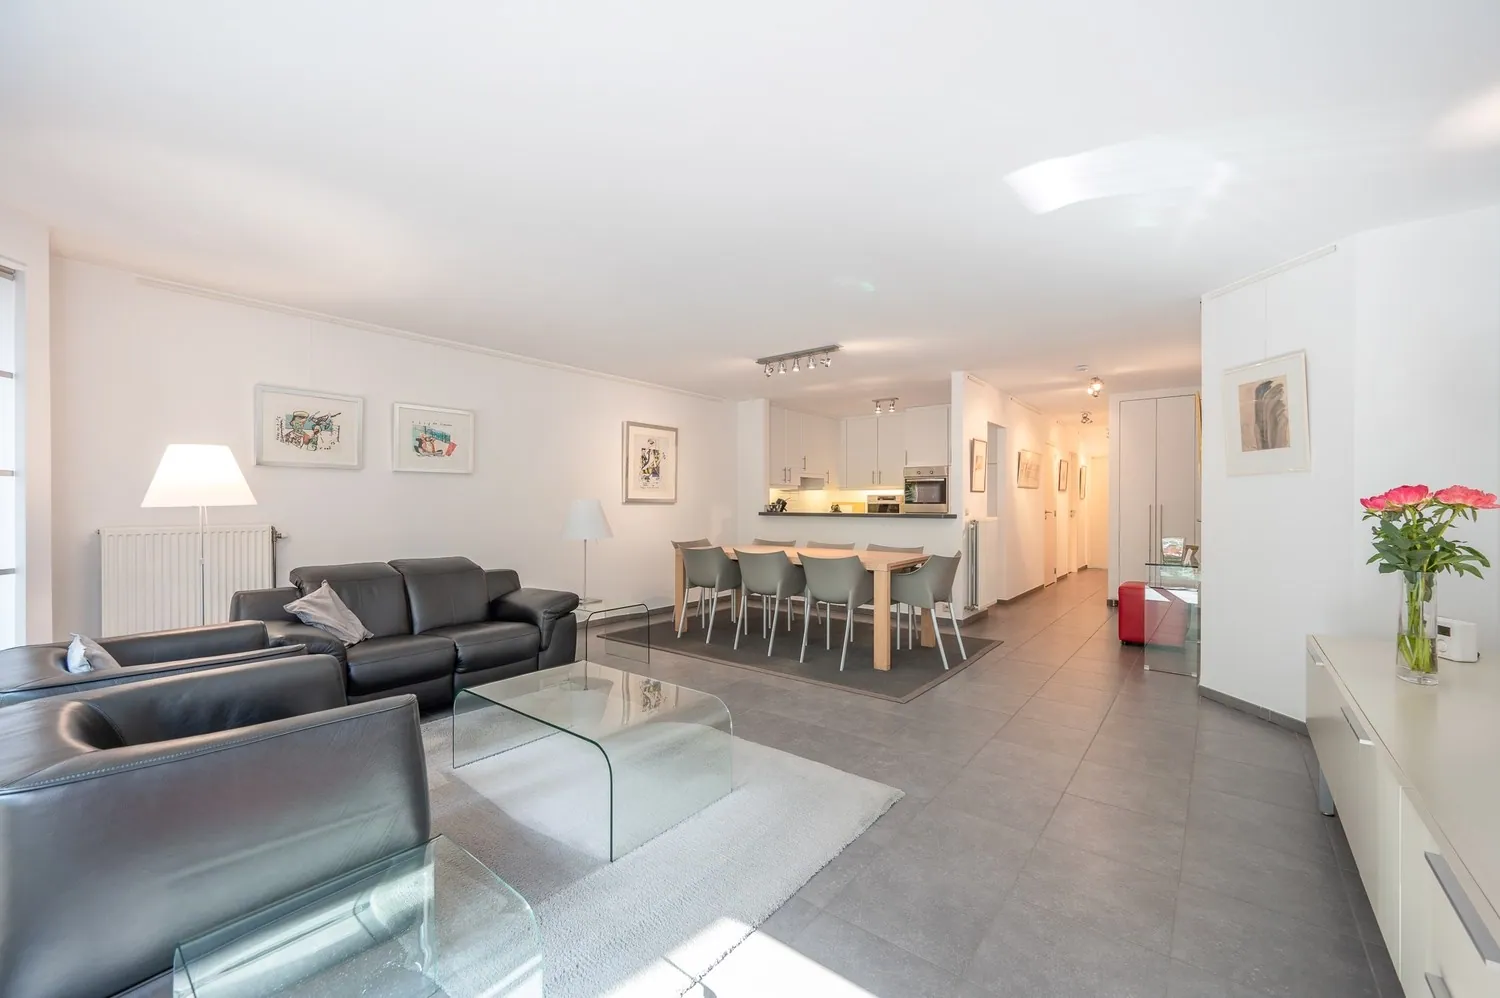 "Appartement spacieux avec 2 chambres et 2 salles de bain à Knokke avec vue dégagée sur la rue."